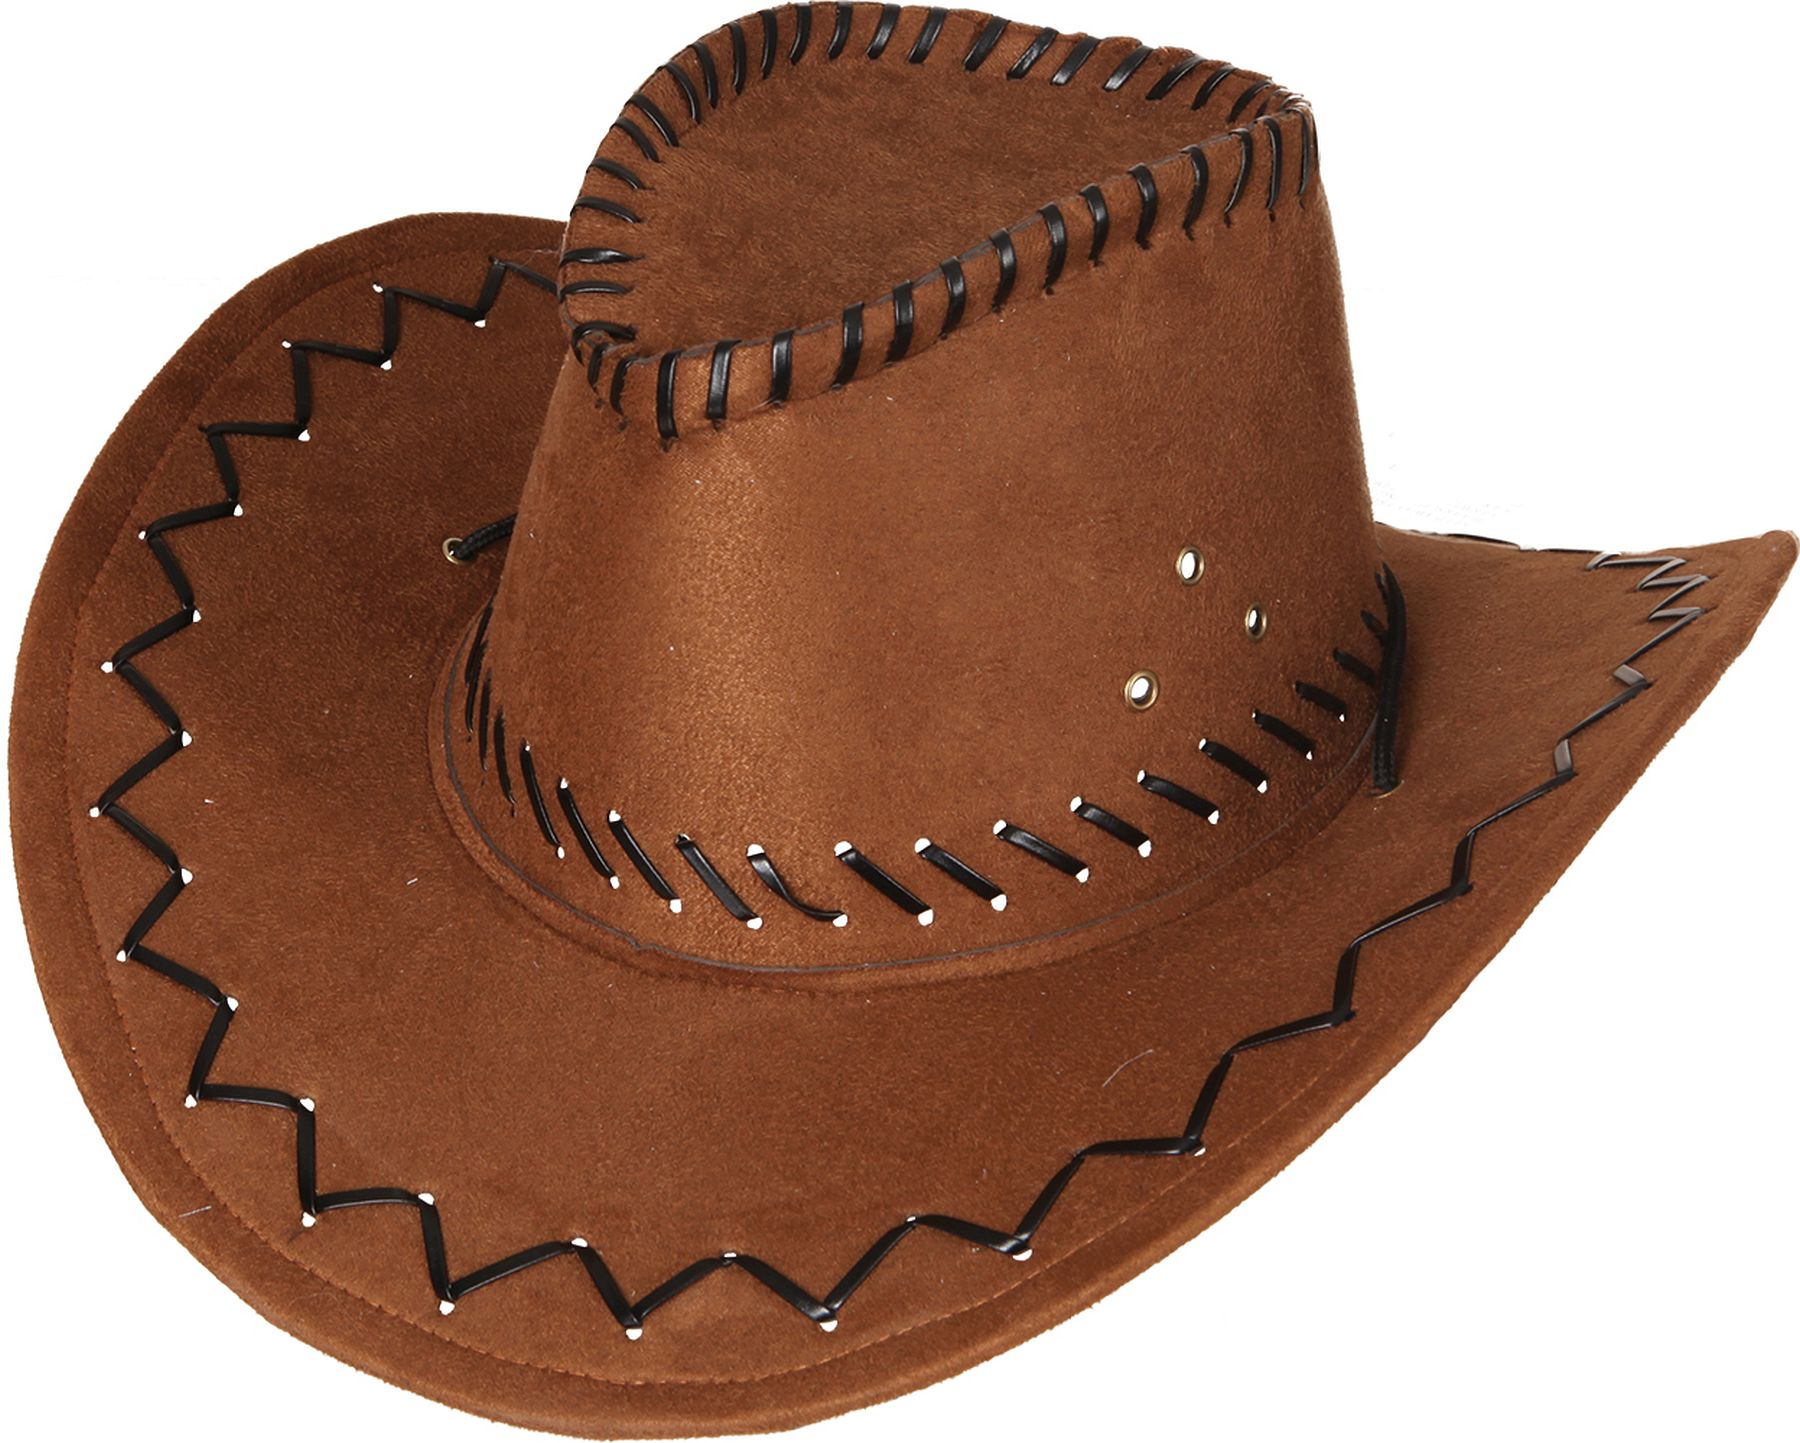 Wild west hat, brown